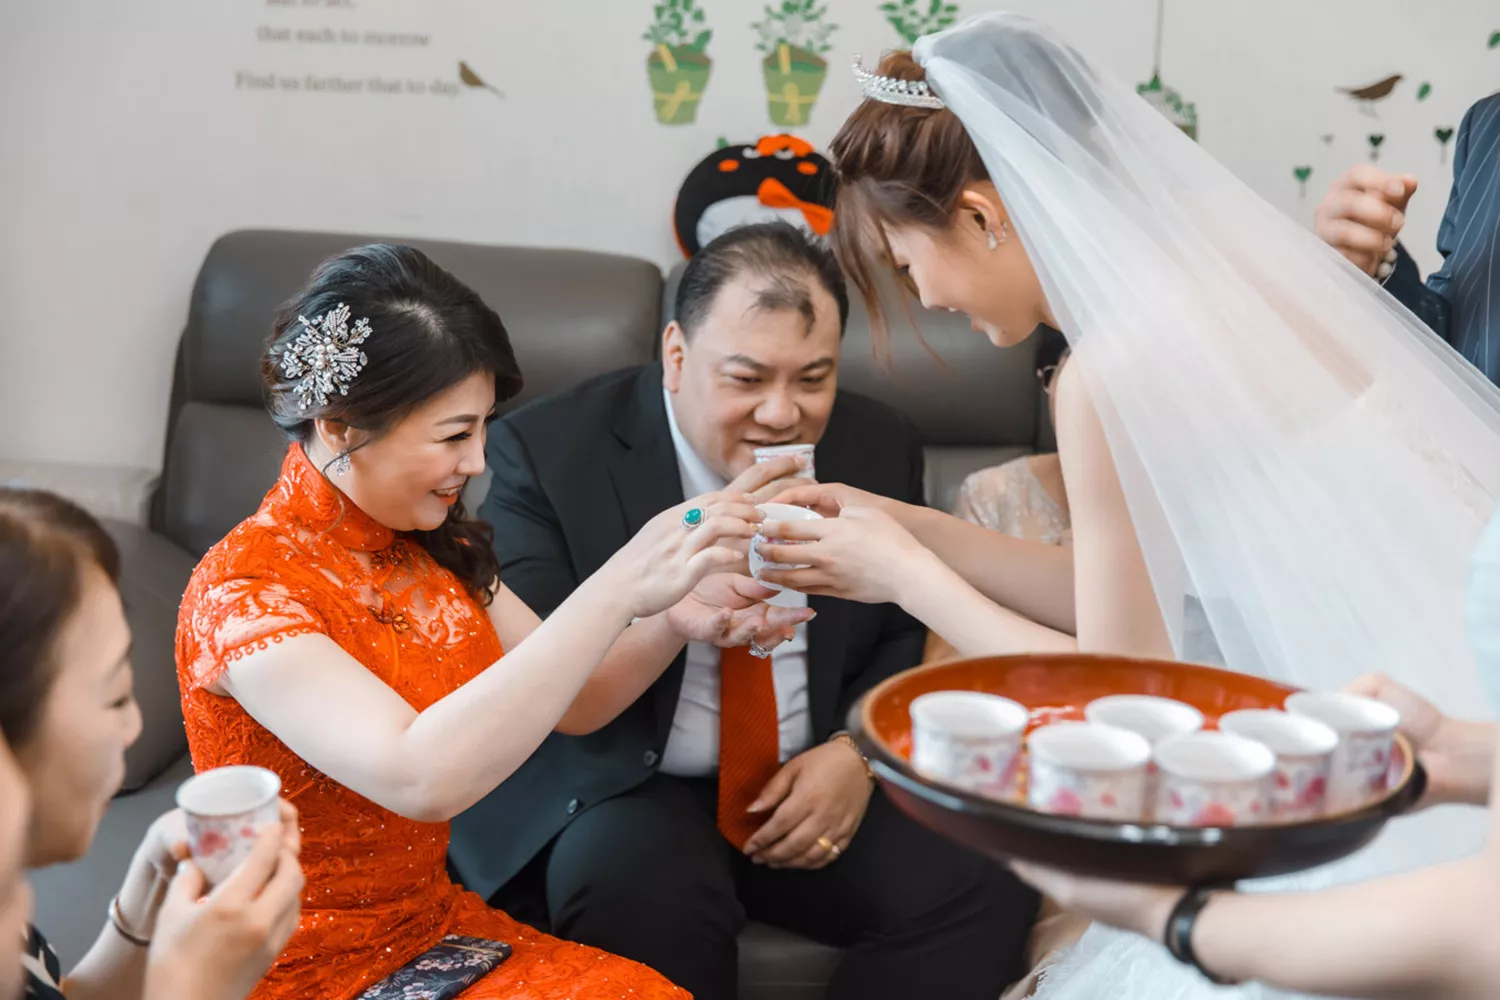 結婚吃茶目的在於介紹新娘給男方親友認識。